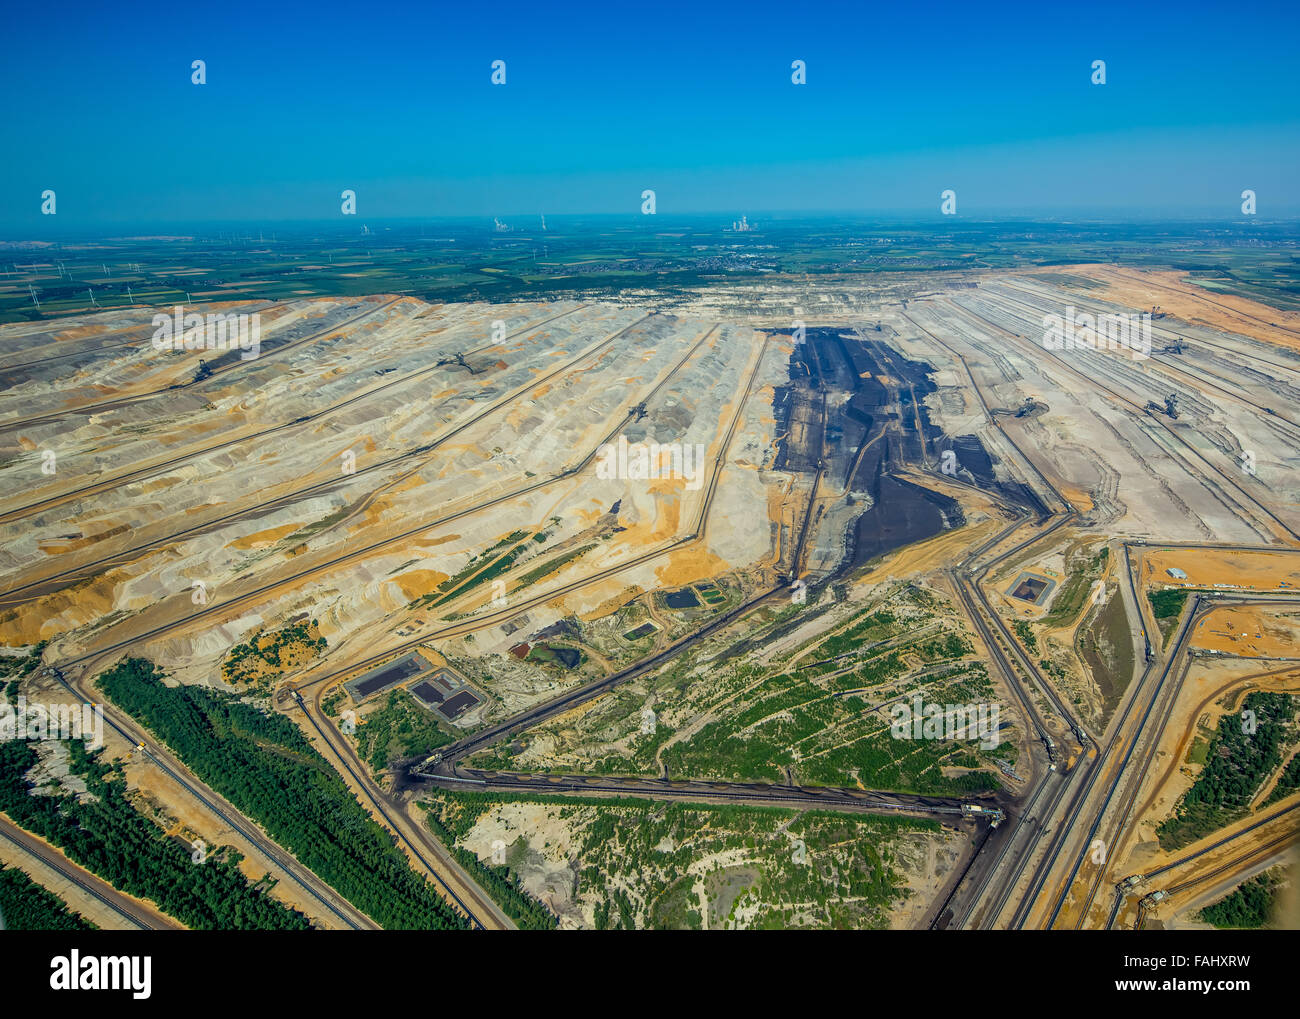 Vista aerea, lignite, marrone coal mining Niederzier, Braunkohletagebau,Elsdorf, Basso Reno estrazione della lignite,della Renania settentrionale-Vestfalia Foto Stock